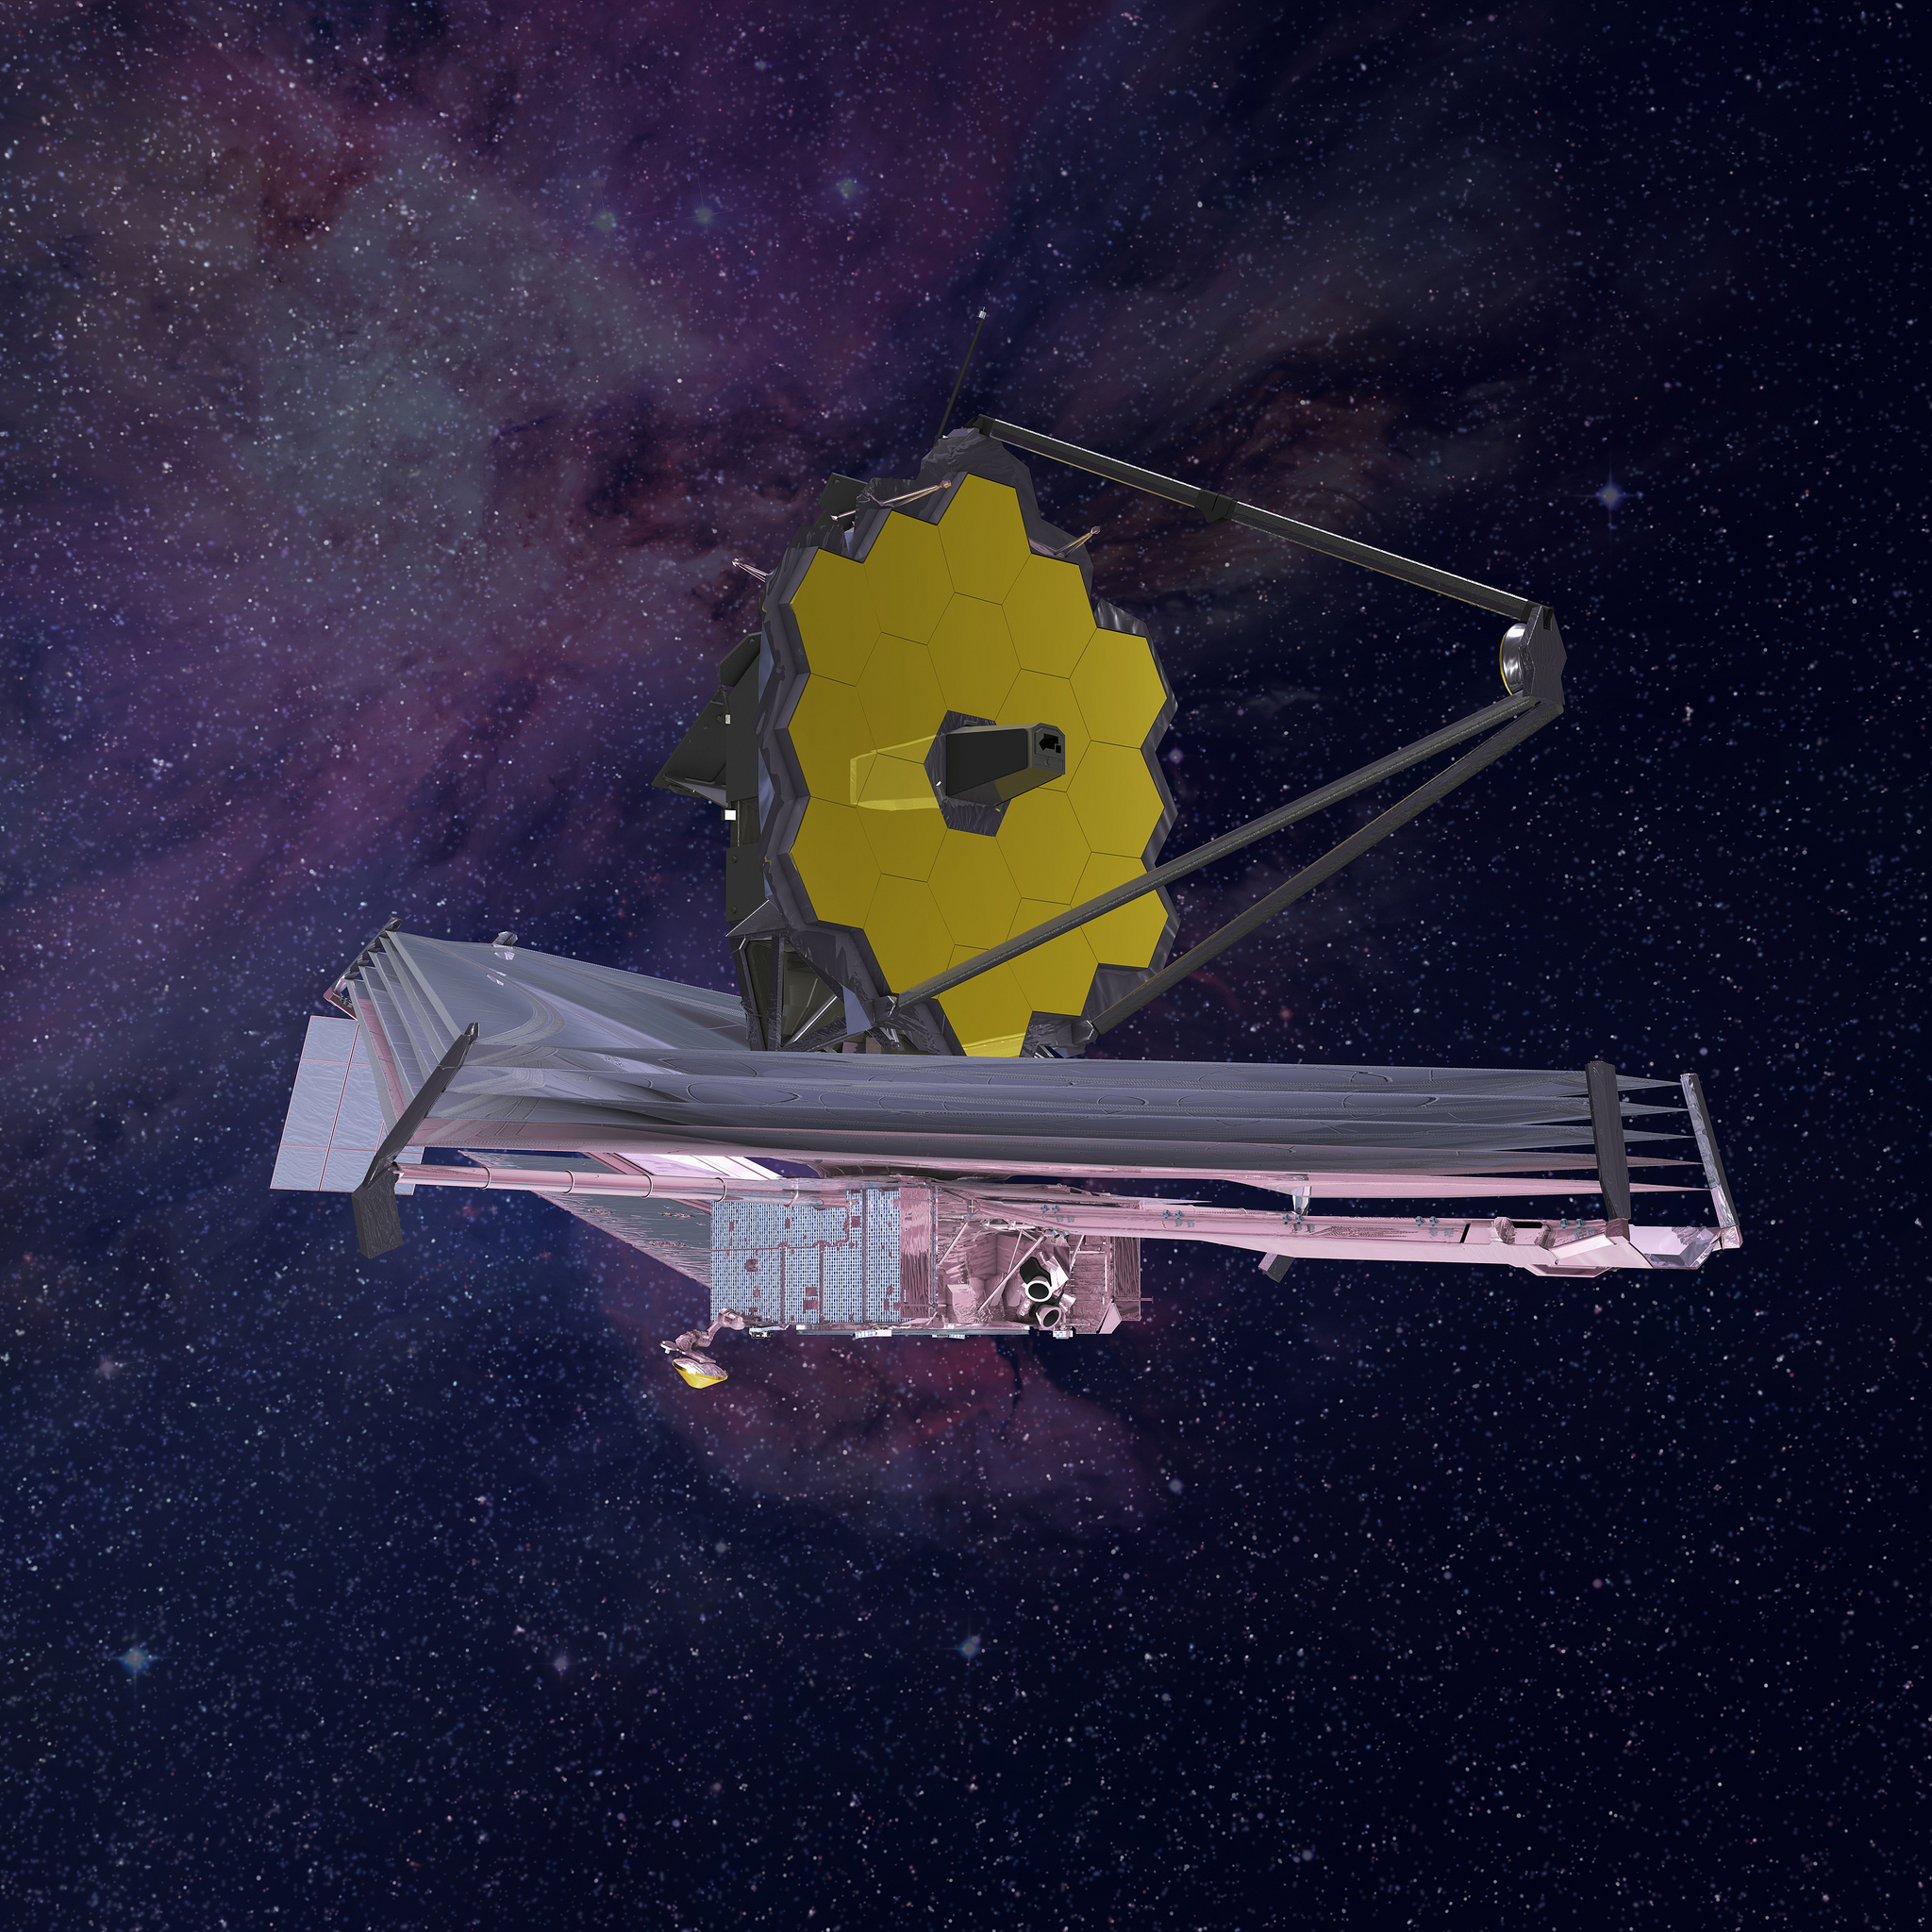 James Webb Space Telescope artist's rendering